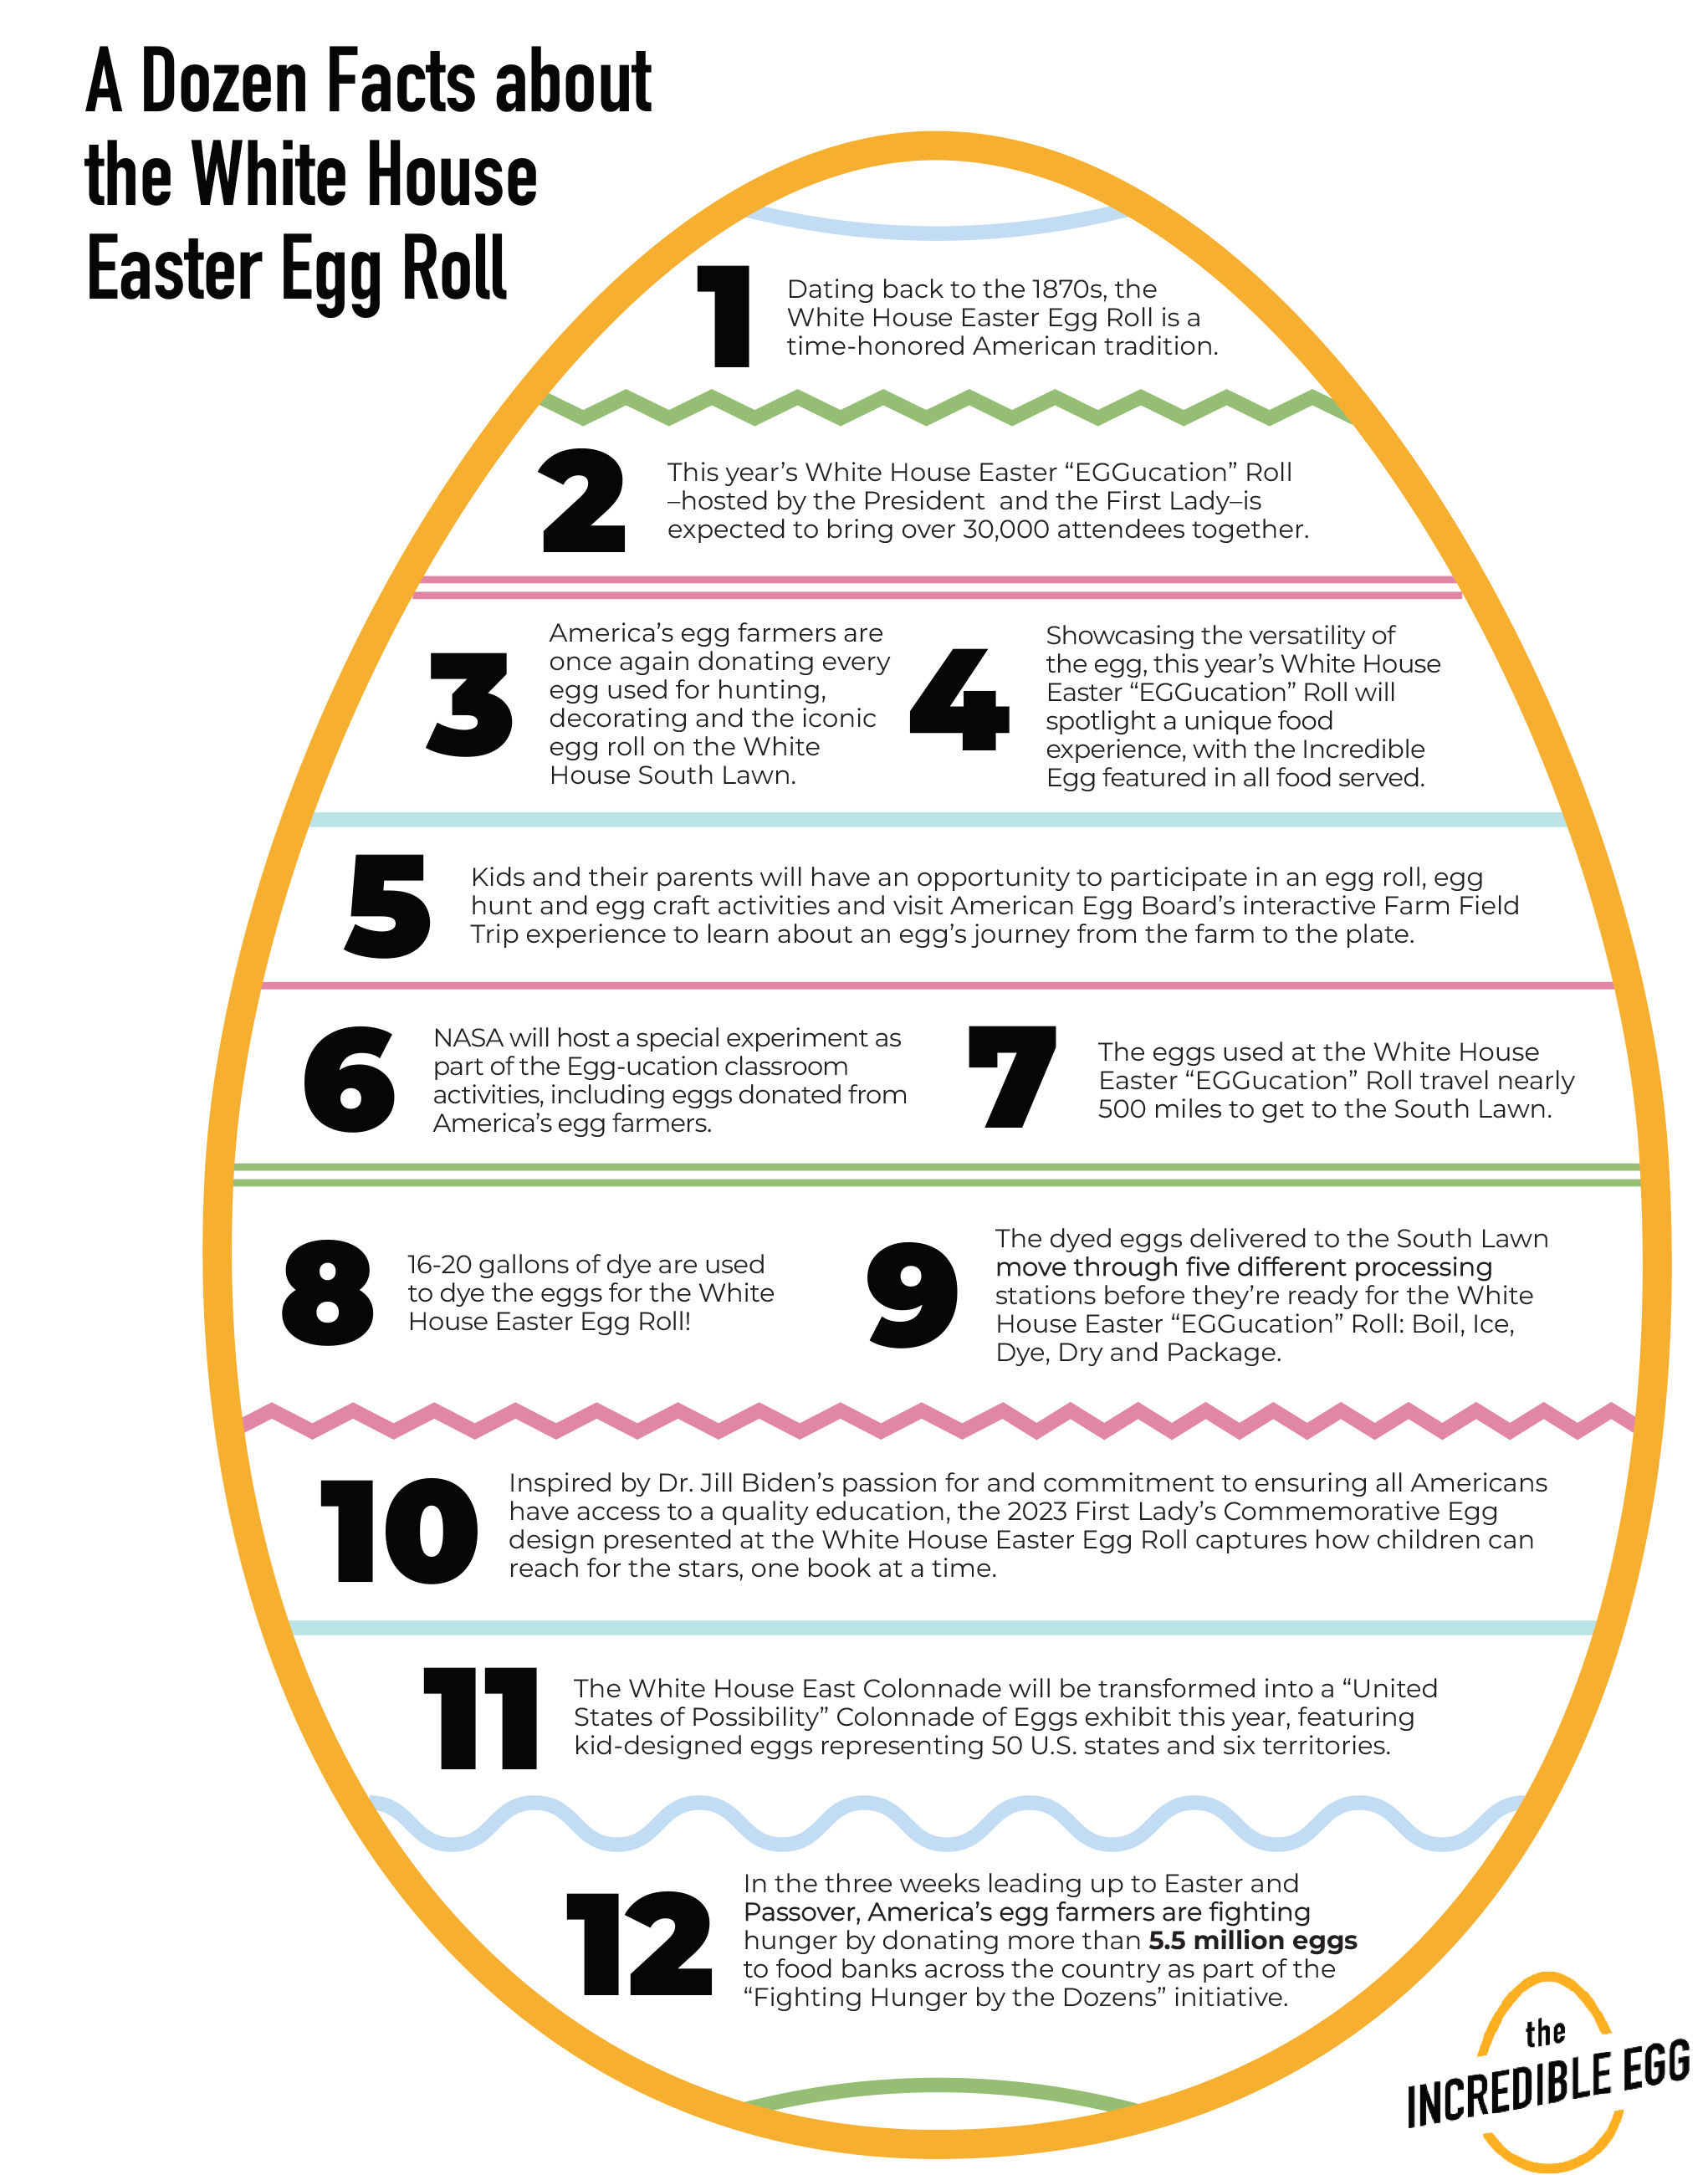 White House Easter “EGGucation” Roll Fact Sheet